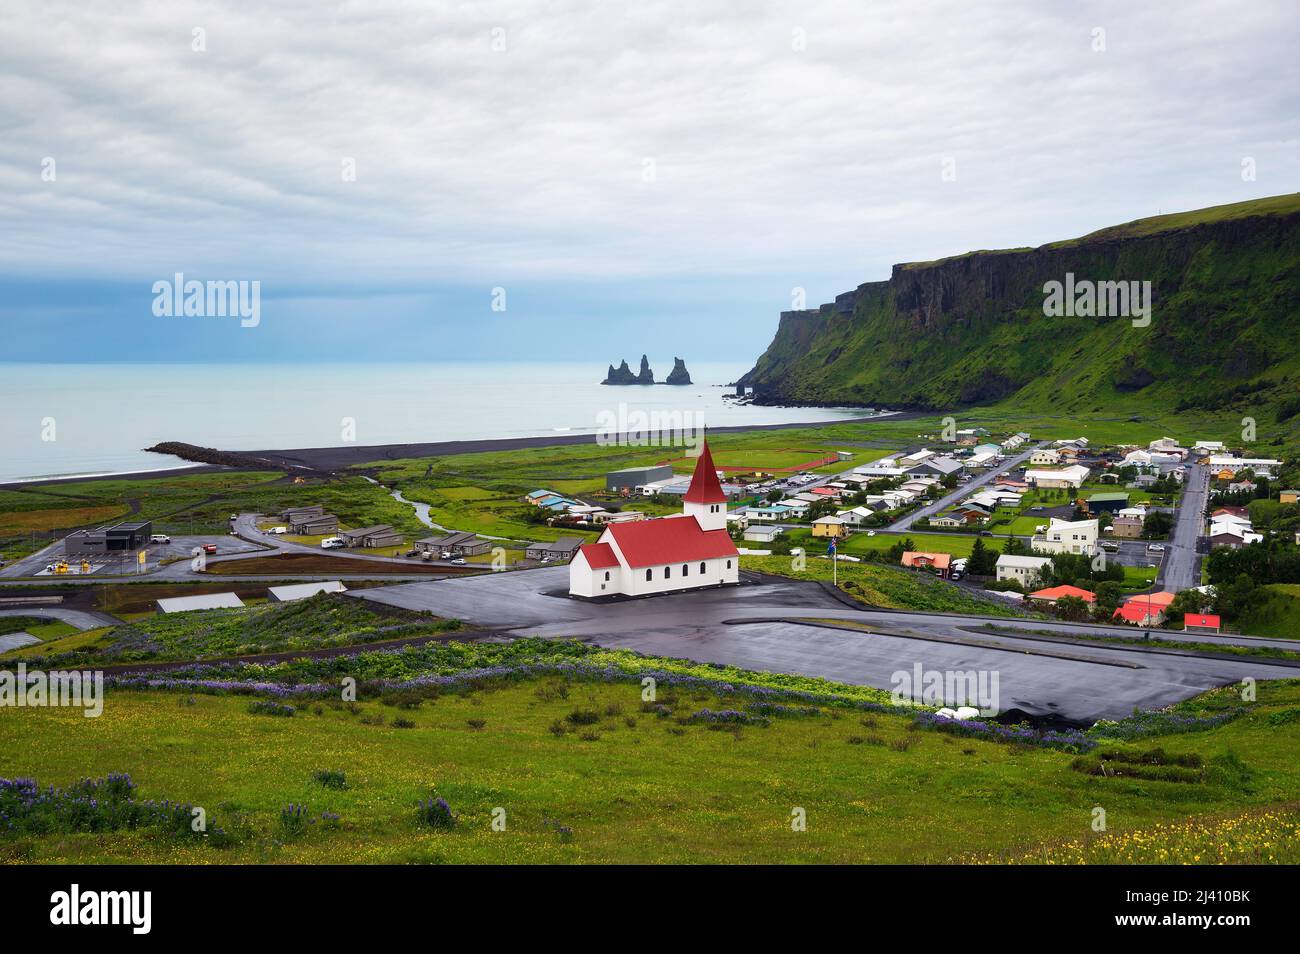 Village of Vik i Myrdal in Iceland Stock Photo